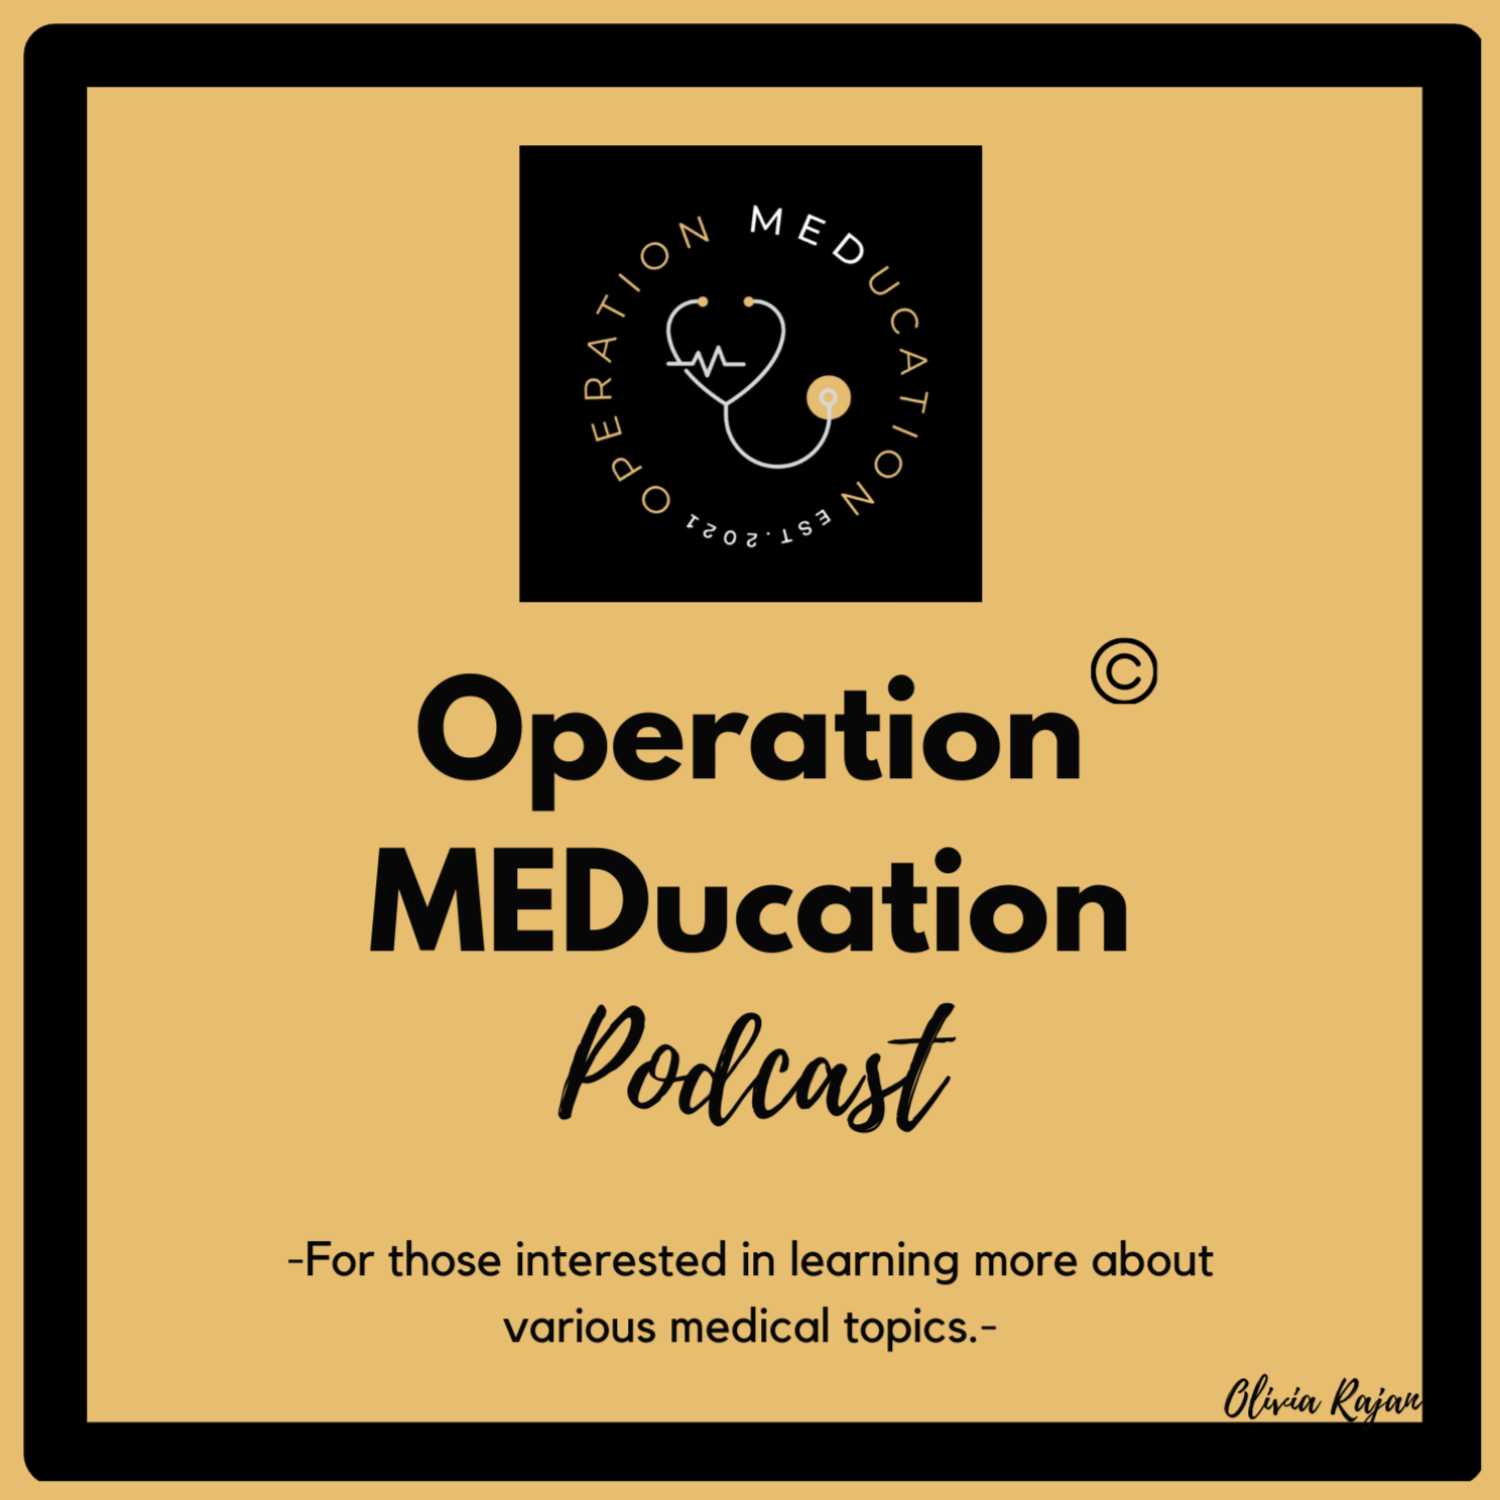 Operation MEDucation